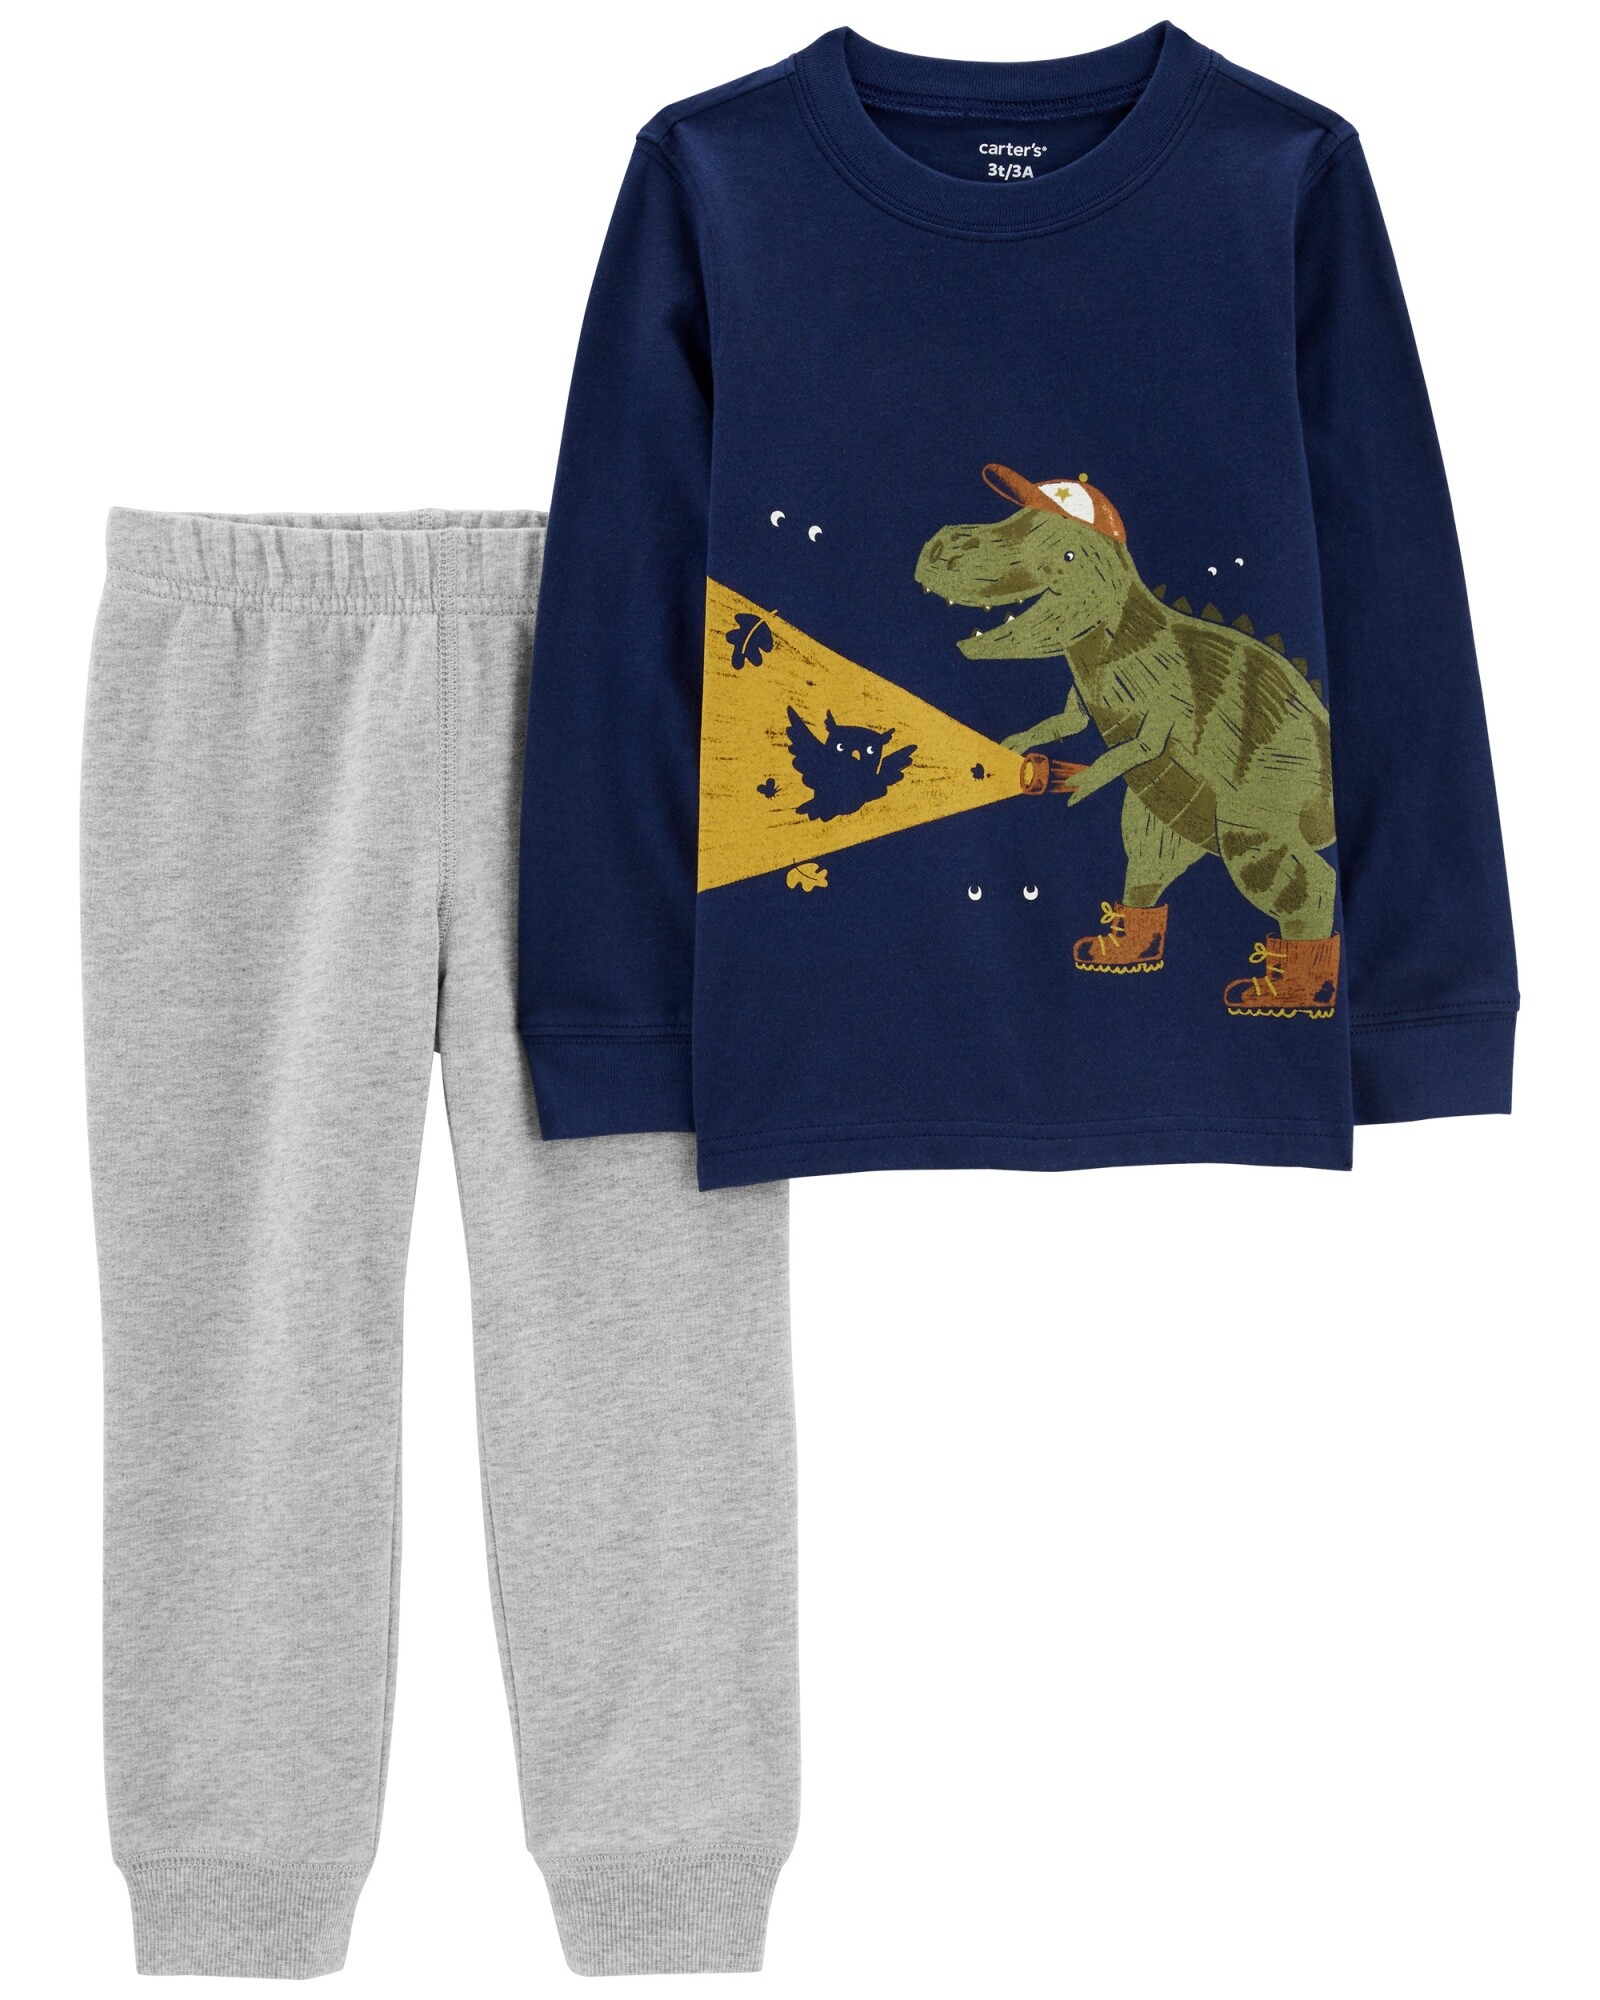 Set dos piezas pantalón y remera manga larga con estampa dinosaurio de algodón Sin color